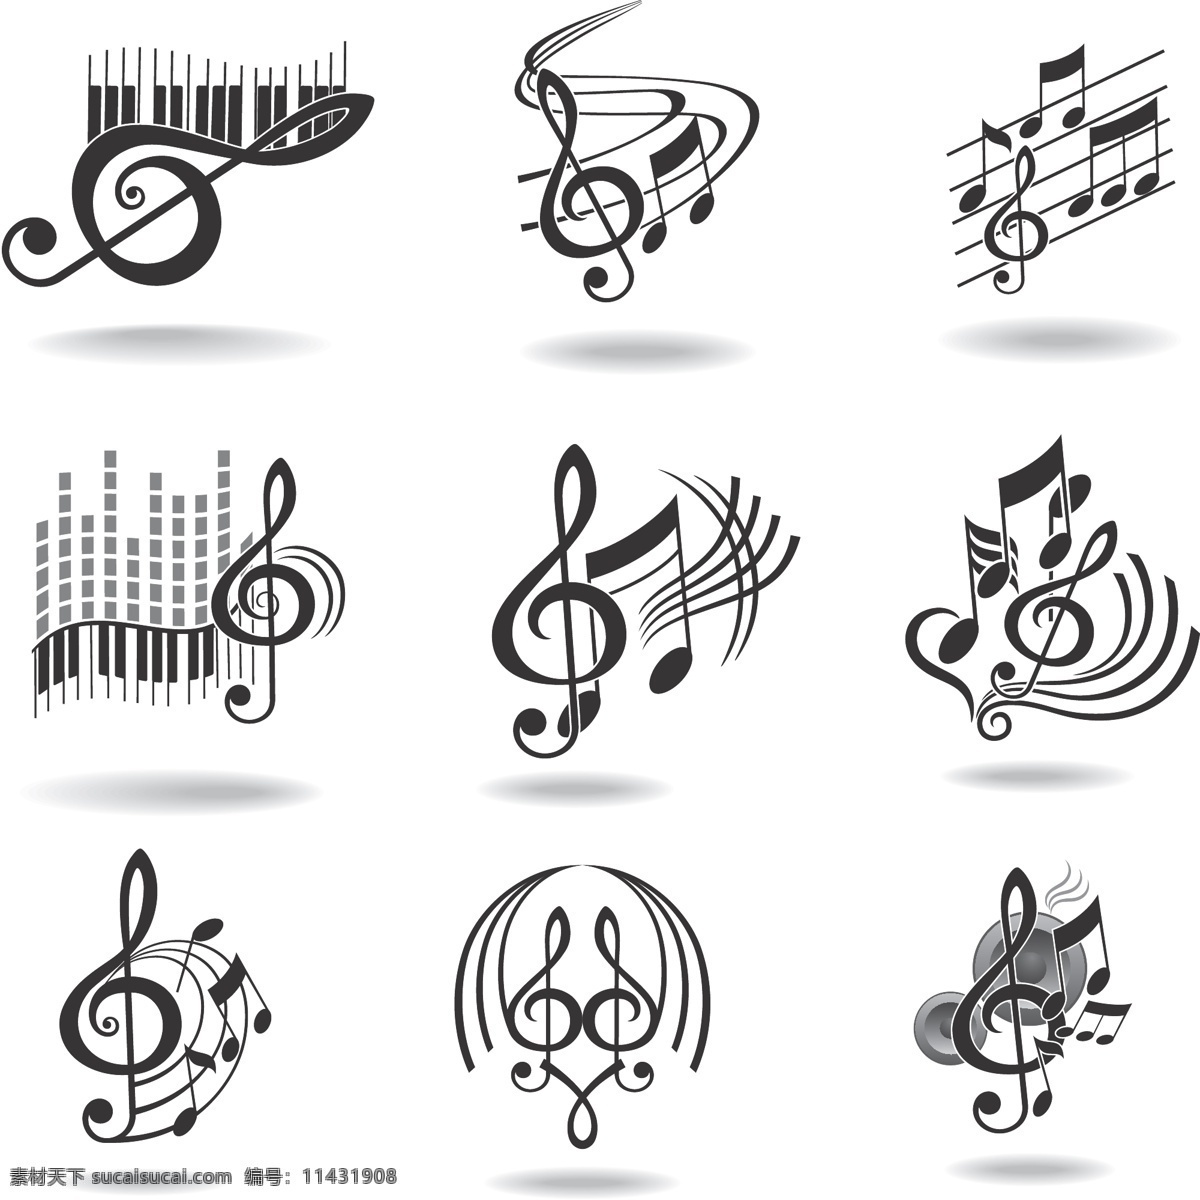 音乐 元素 图标 矢量 模板 设计稿 素材元素 音符 源文件 矢量图